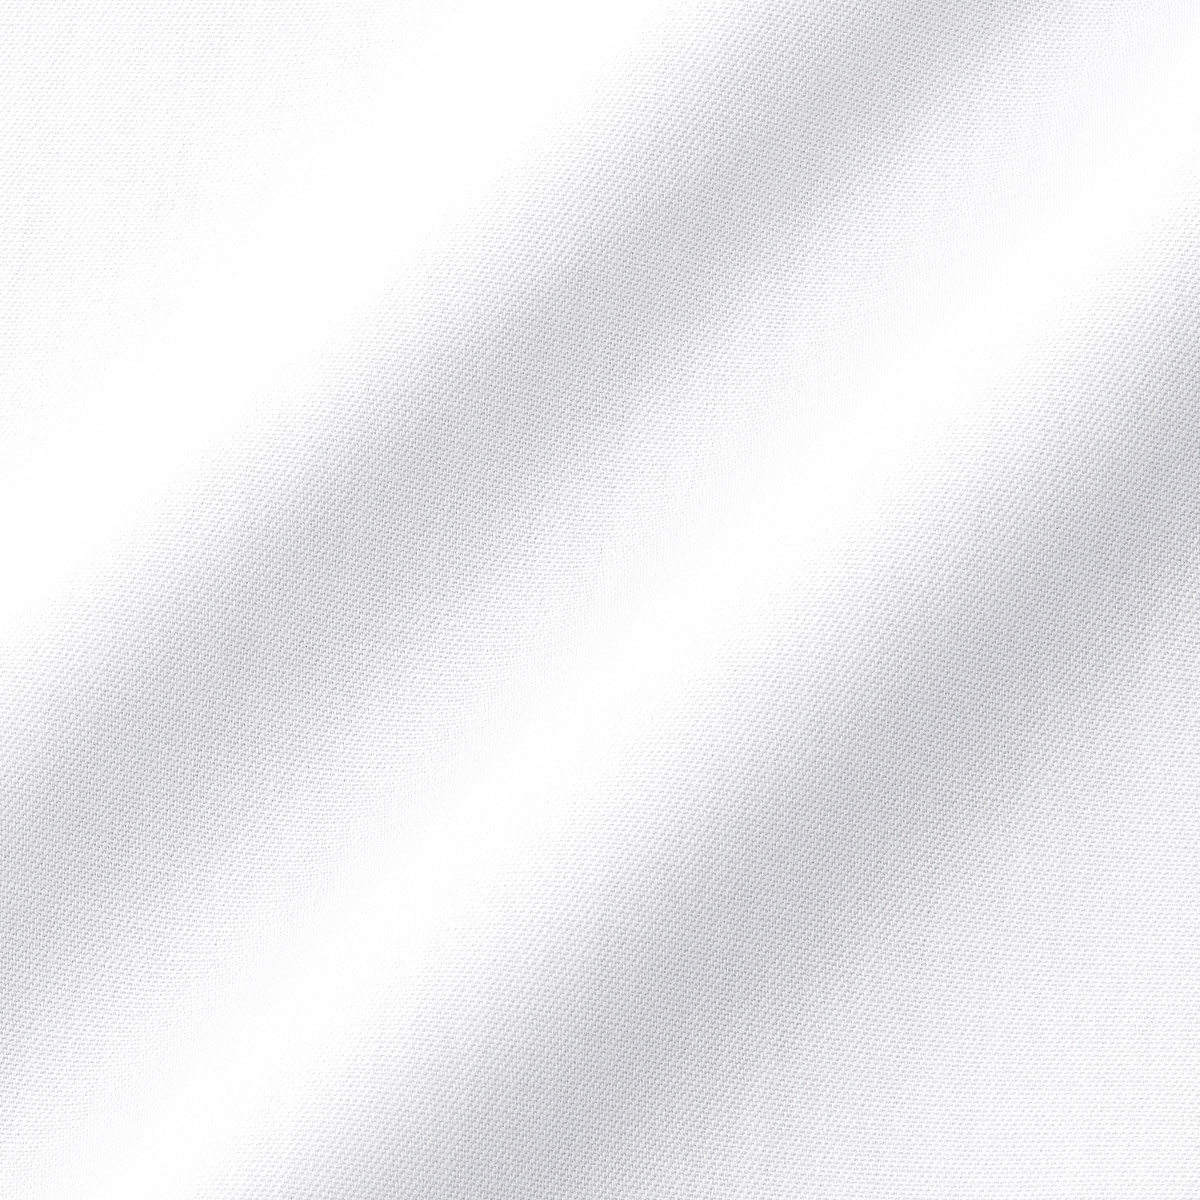 長袖レギュラーカラー ホワイト ワイシャツ スリムフィット LORDSON Crest